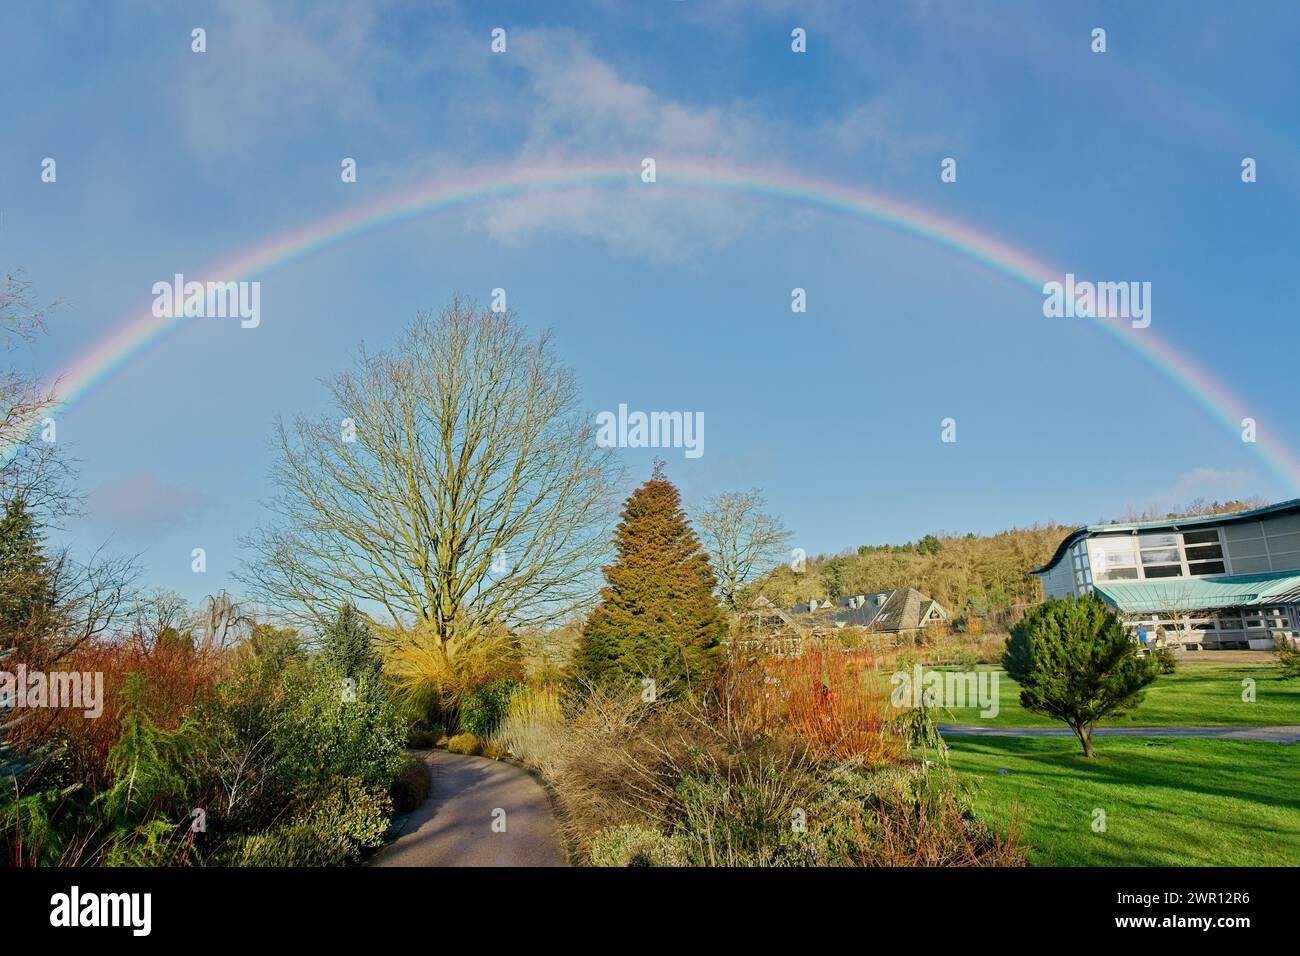 Un arcobaleno vibrante abbellisce il cielo sopra il RHS Garden di Harrogate, Inghilterra, in una soleggiata giornata invernale, aggiungendo un'eterea bellezza alla scena. Foto Stock